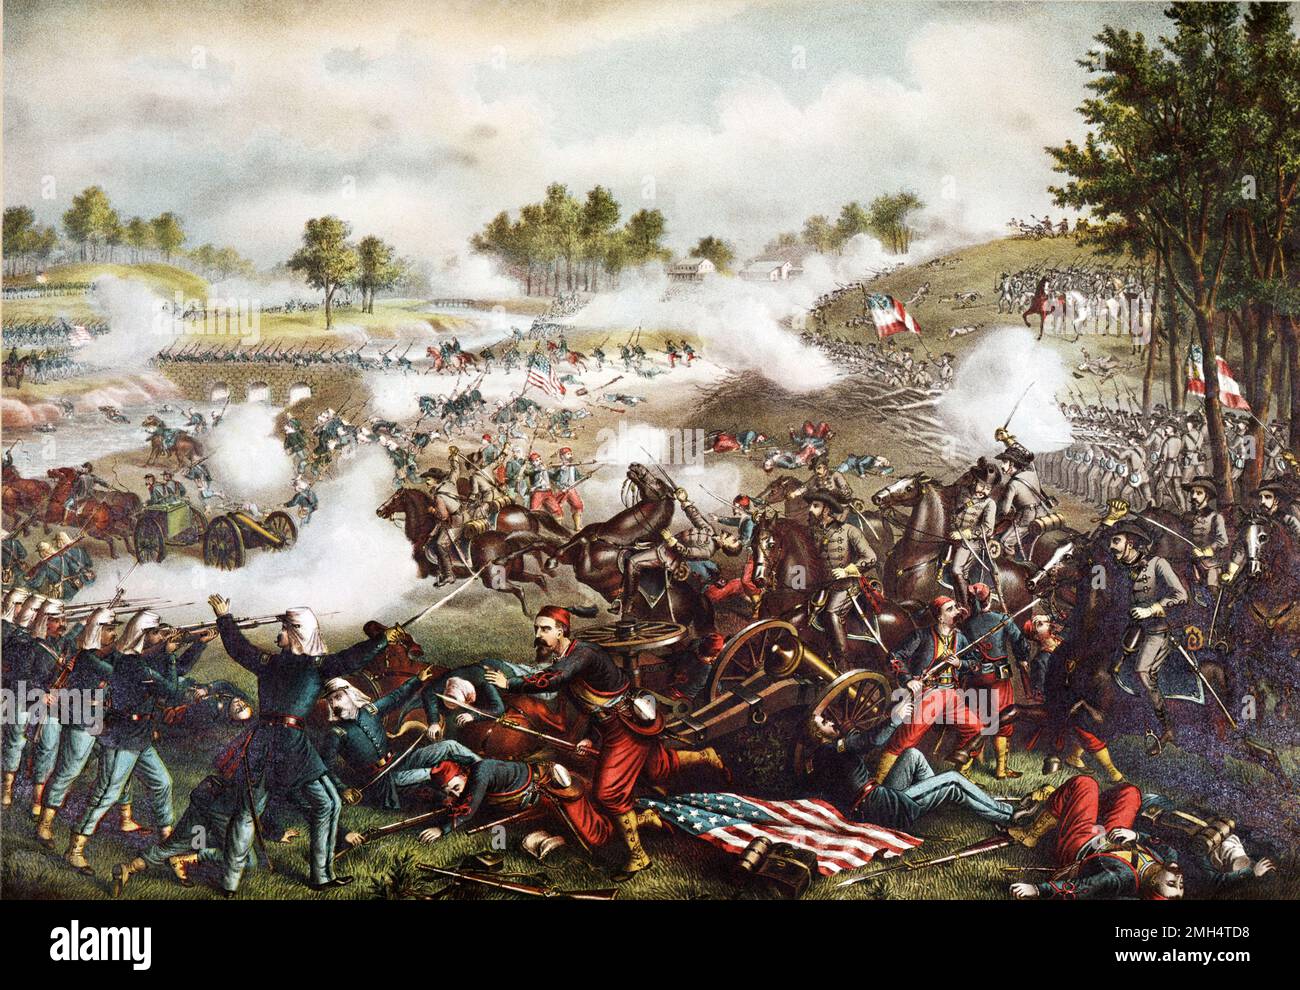 La Primera Batalla de Bull Run (el nombre utilizado por las fuerzas de la Unión), también conocida como la Batalla del Primer Manassas fue la primera gran batalla entre las fuerzas unionistas y confederadas durante la Guerra Civil Americana. Fue combatido el 21 de julio de 1861 en Virginia Occidental. Fue ganado por las fuerzas confederadas bajo Joseph Johnston y PGT Beauregard. Fue en esta batalla que Thomas Jackson obtuvo su conocido (y excelente) apodo Stonewall Kackson. Foto de stock